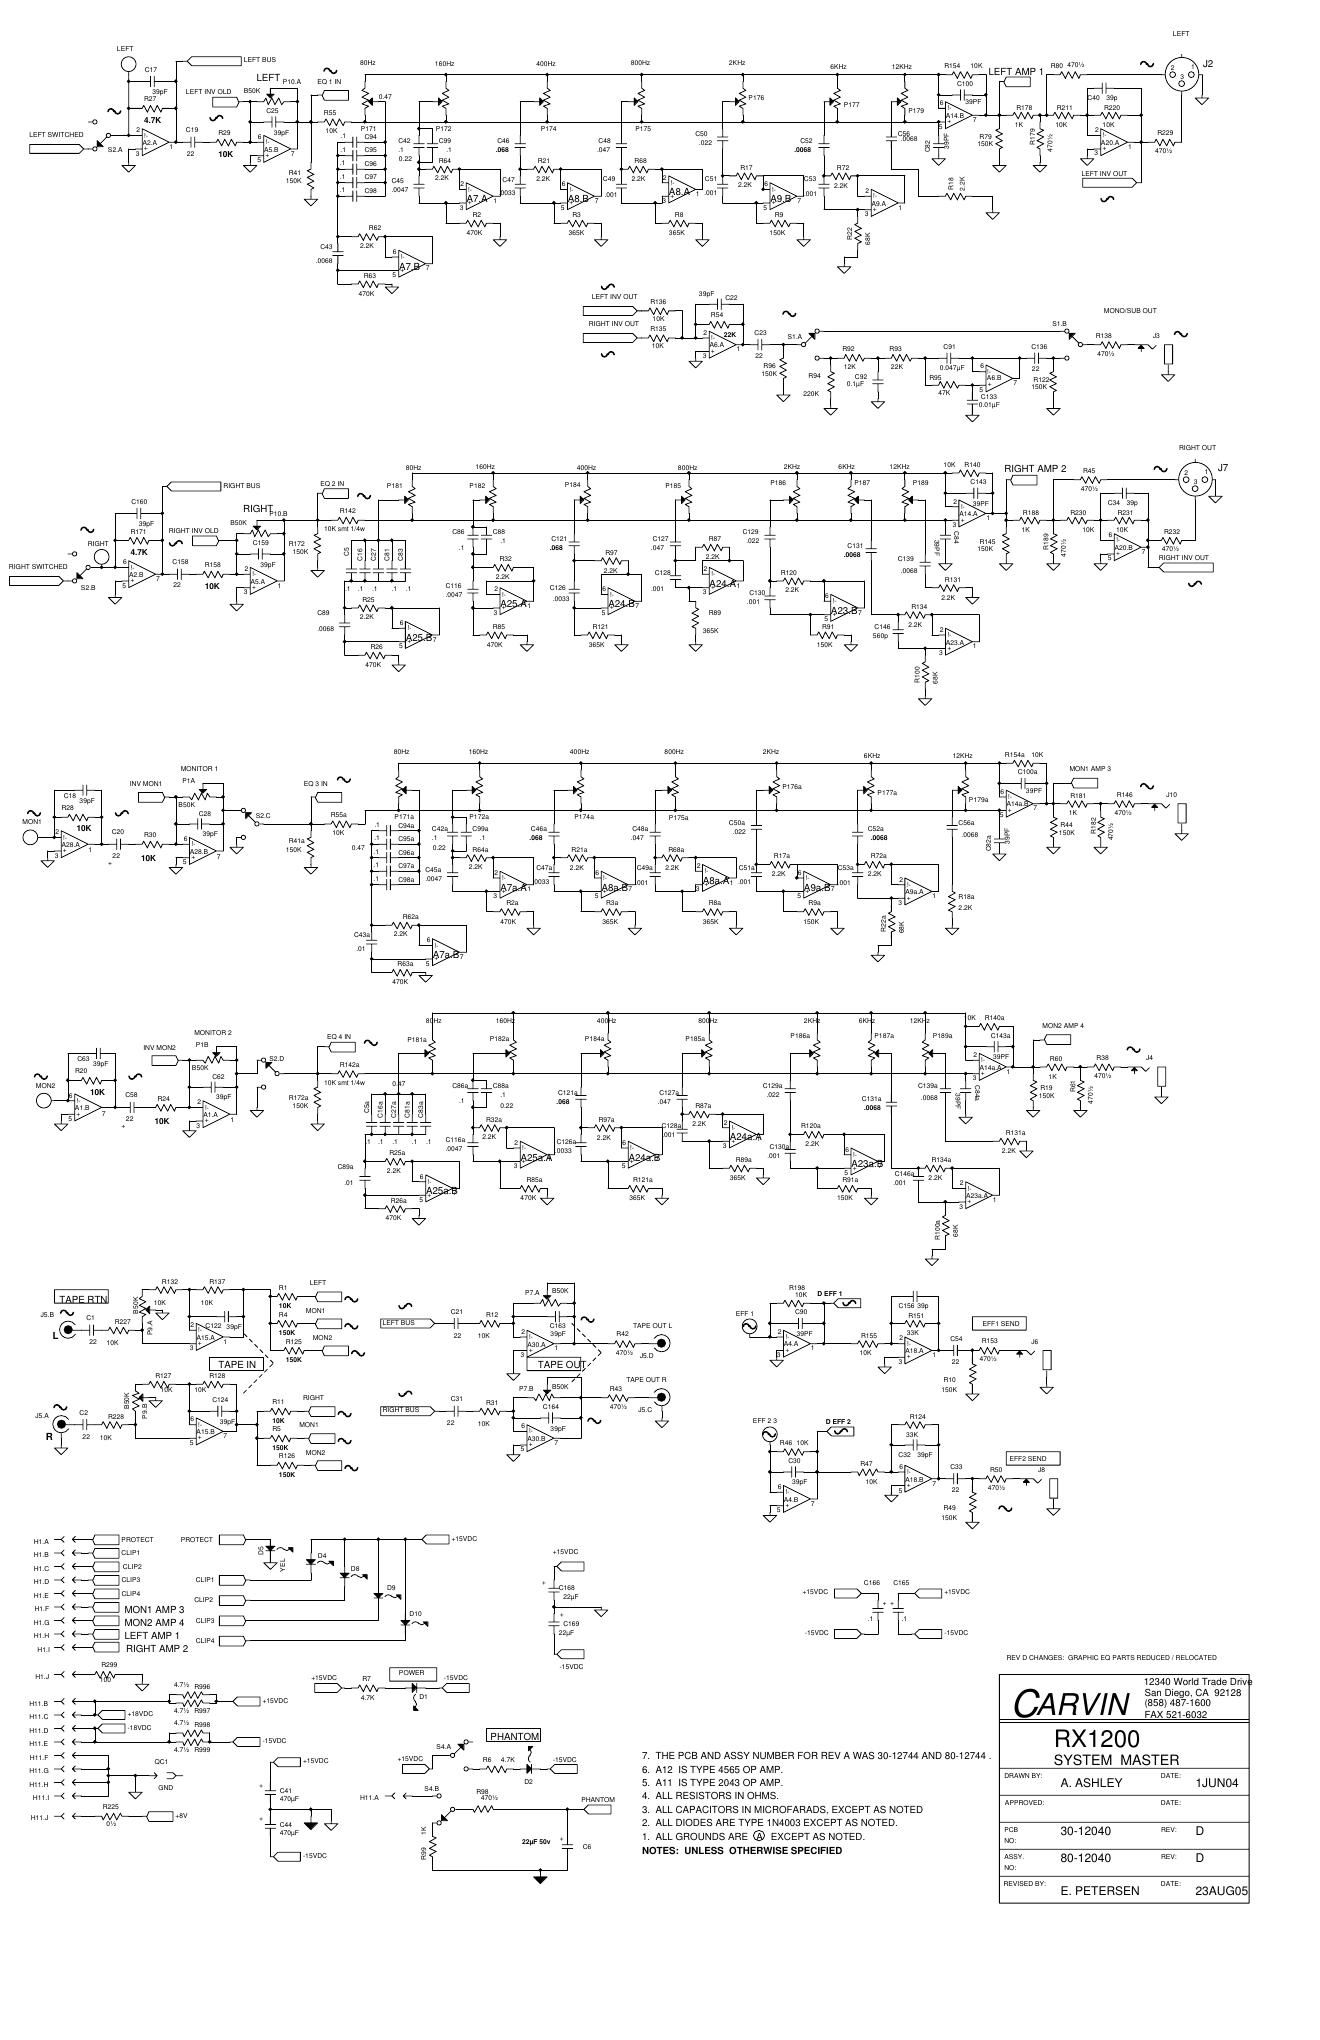 carvin rx1200 mixer schematics